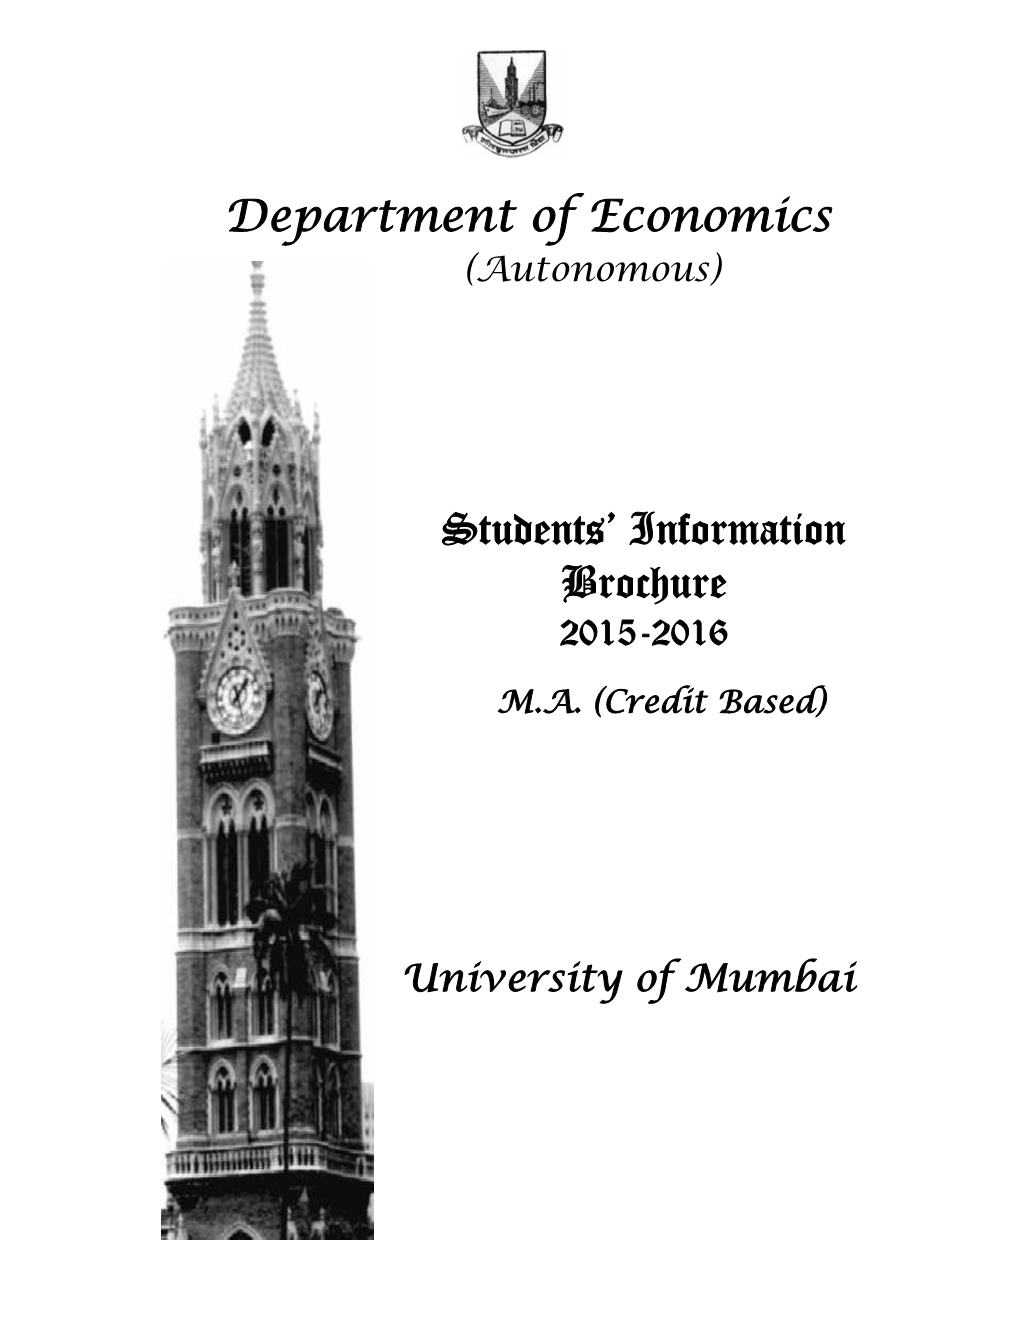 Department of Economics Students' Information Brochure